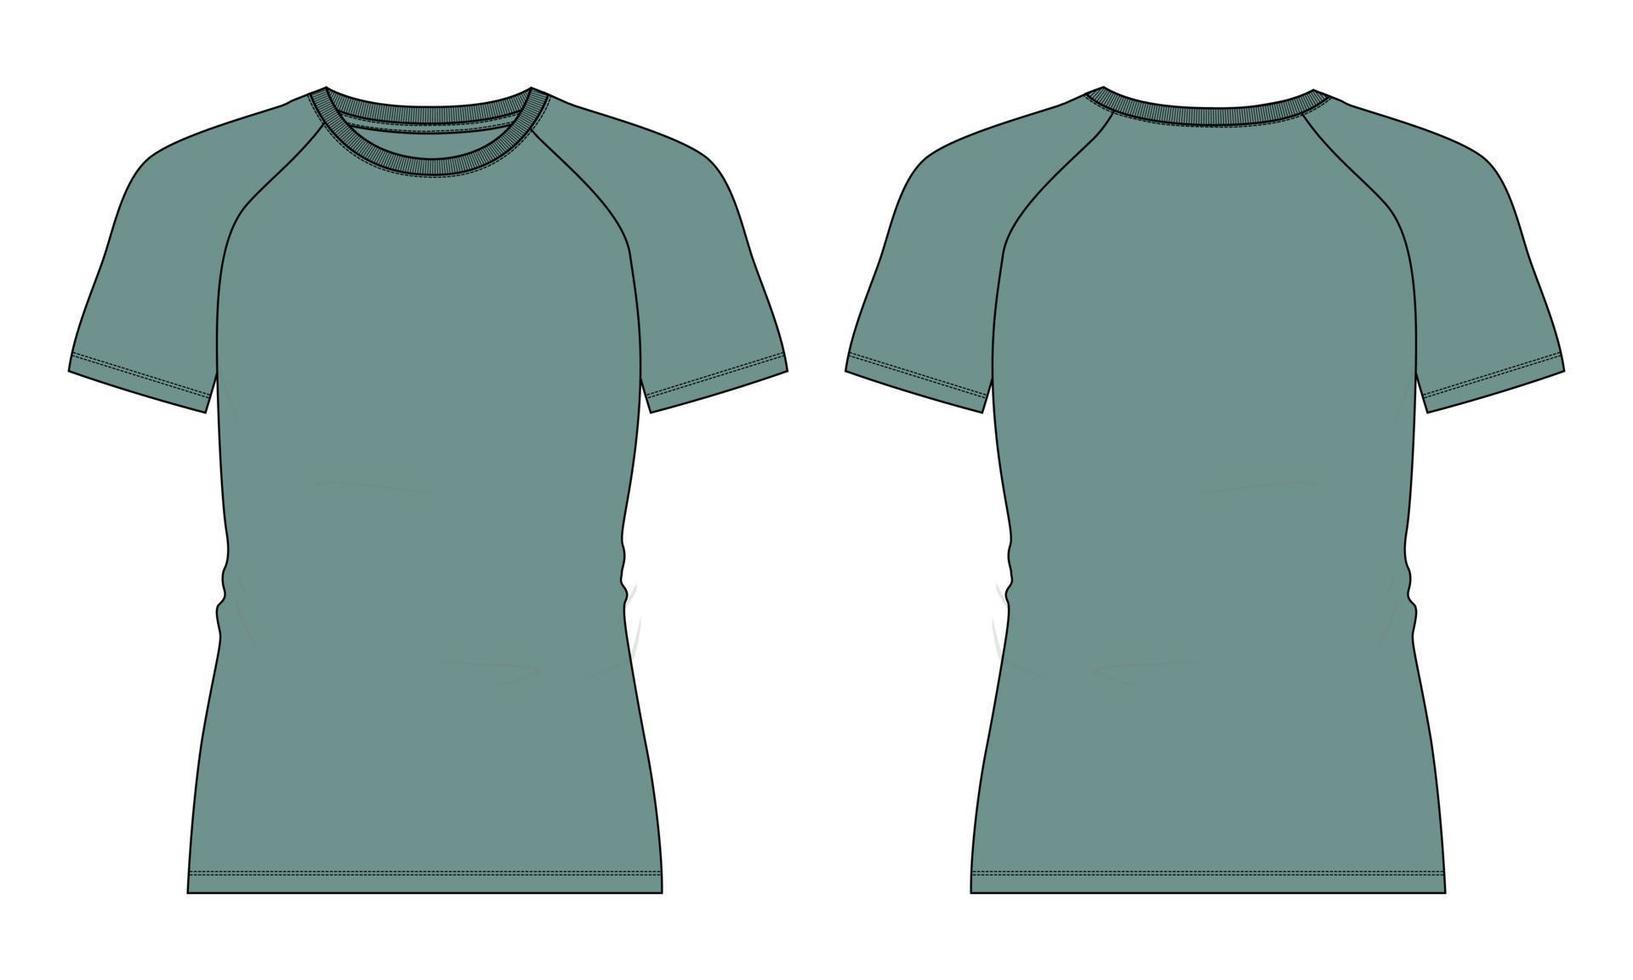 slim fit manica corta maglietta raglan tecnica moda schizzo piatto illustrazione vettoriale colore verde modello viste anteriore e posteriore isolate su sfondo bianco.